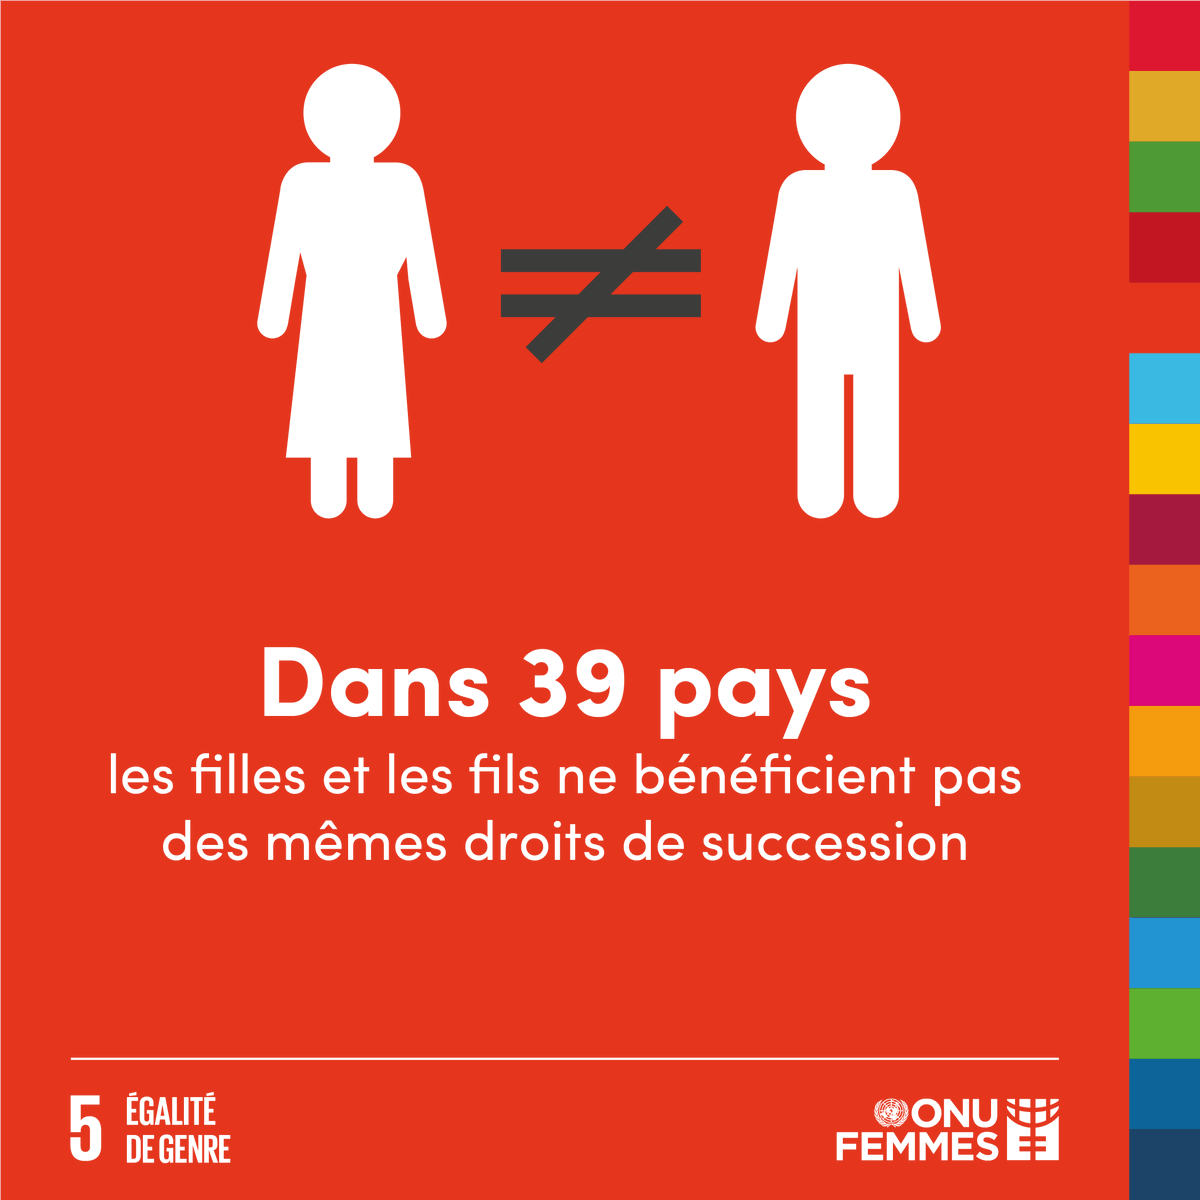 Des inégalités structurelles qui limitent l’autonomisation économique des femmes et des filles et les rendent plus dépendantes. #SDG5 #ODD